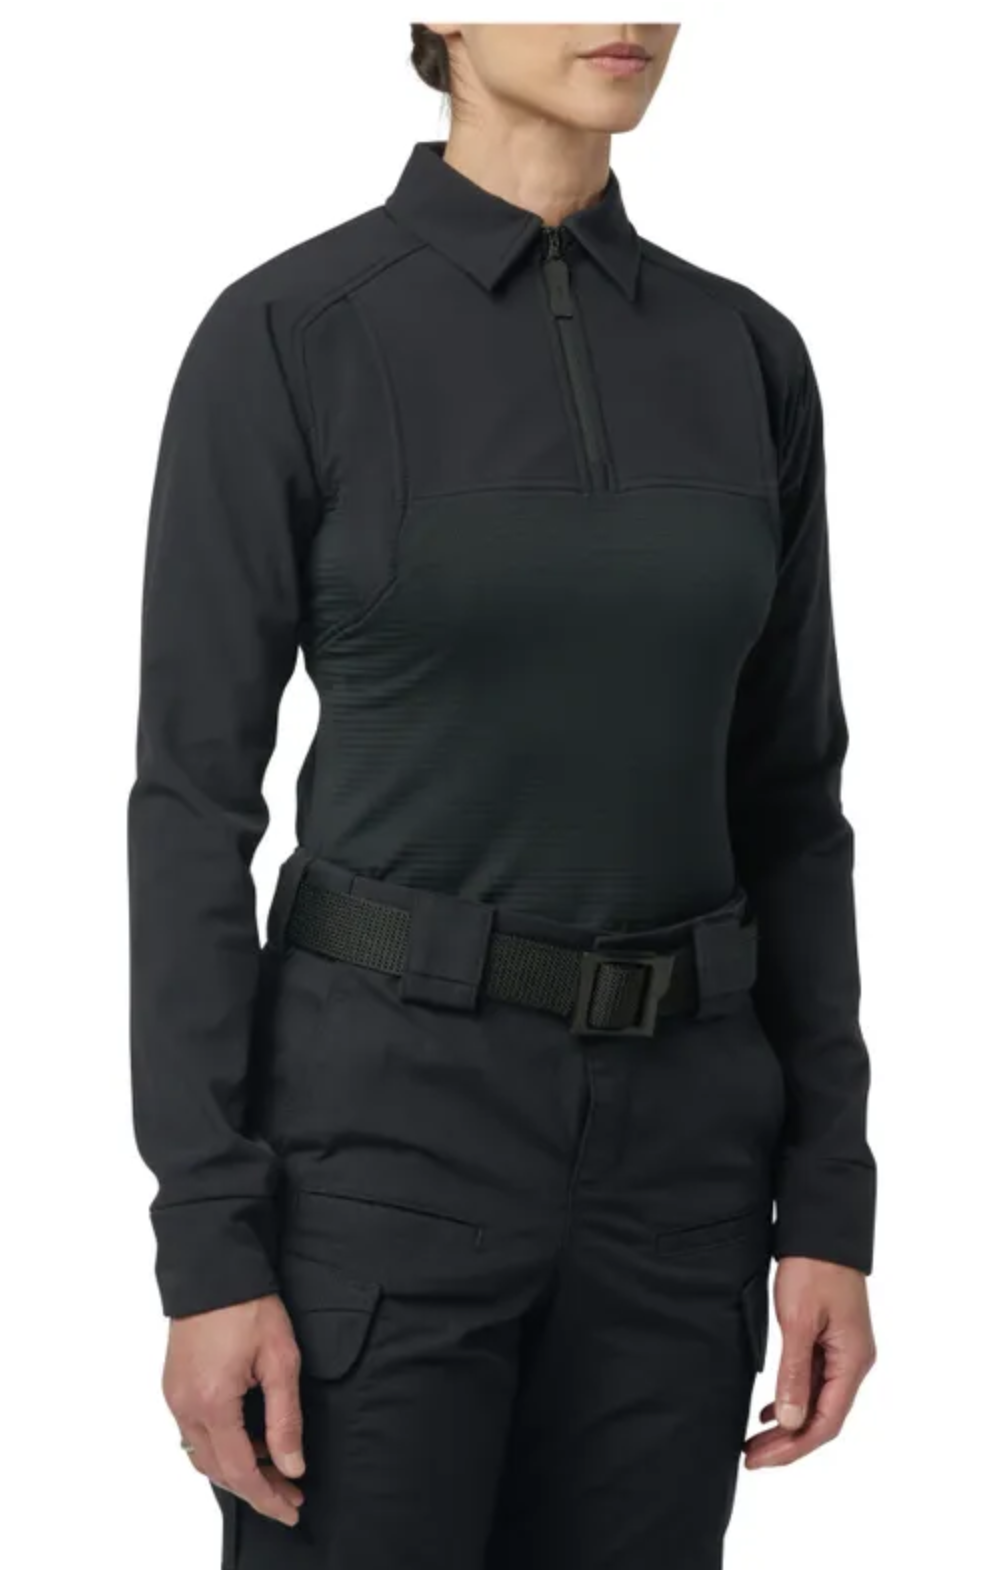 5.11 - Women's Rapid PDU® CLD Long Sleeve Shirt - Midnight Navy (750)